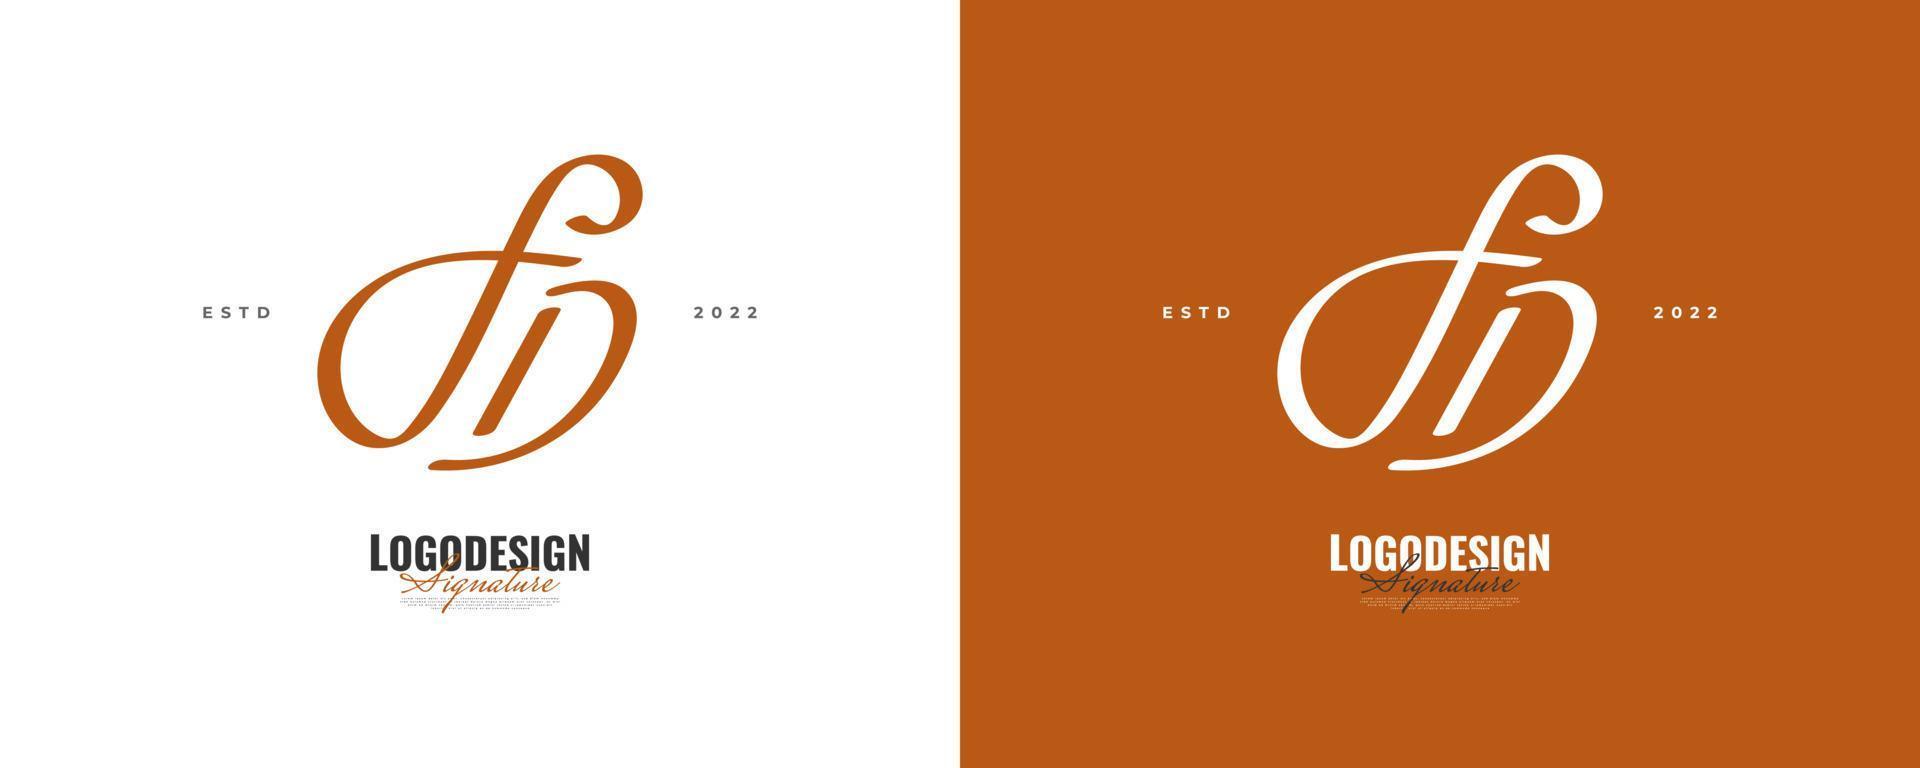 diseño inicial del logotipo f y d con un estilo de escritura elegante y minimalista. logotipo o símbolo de la firma fd para bodas, moda, joyería, boutique e identidad comercial vector